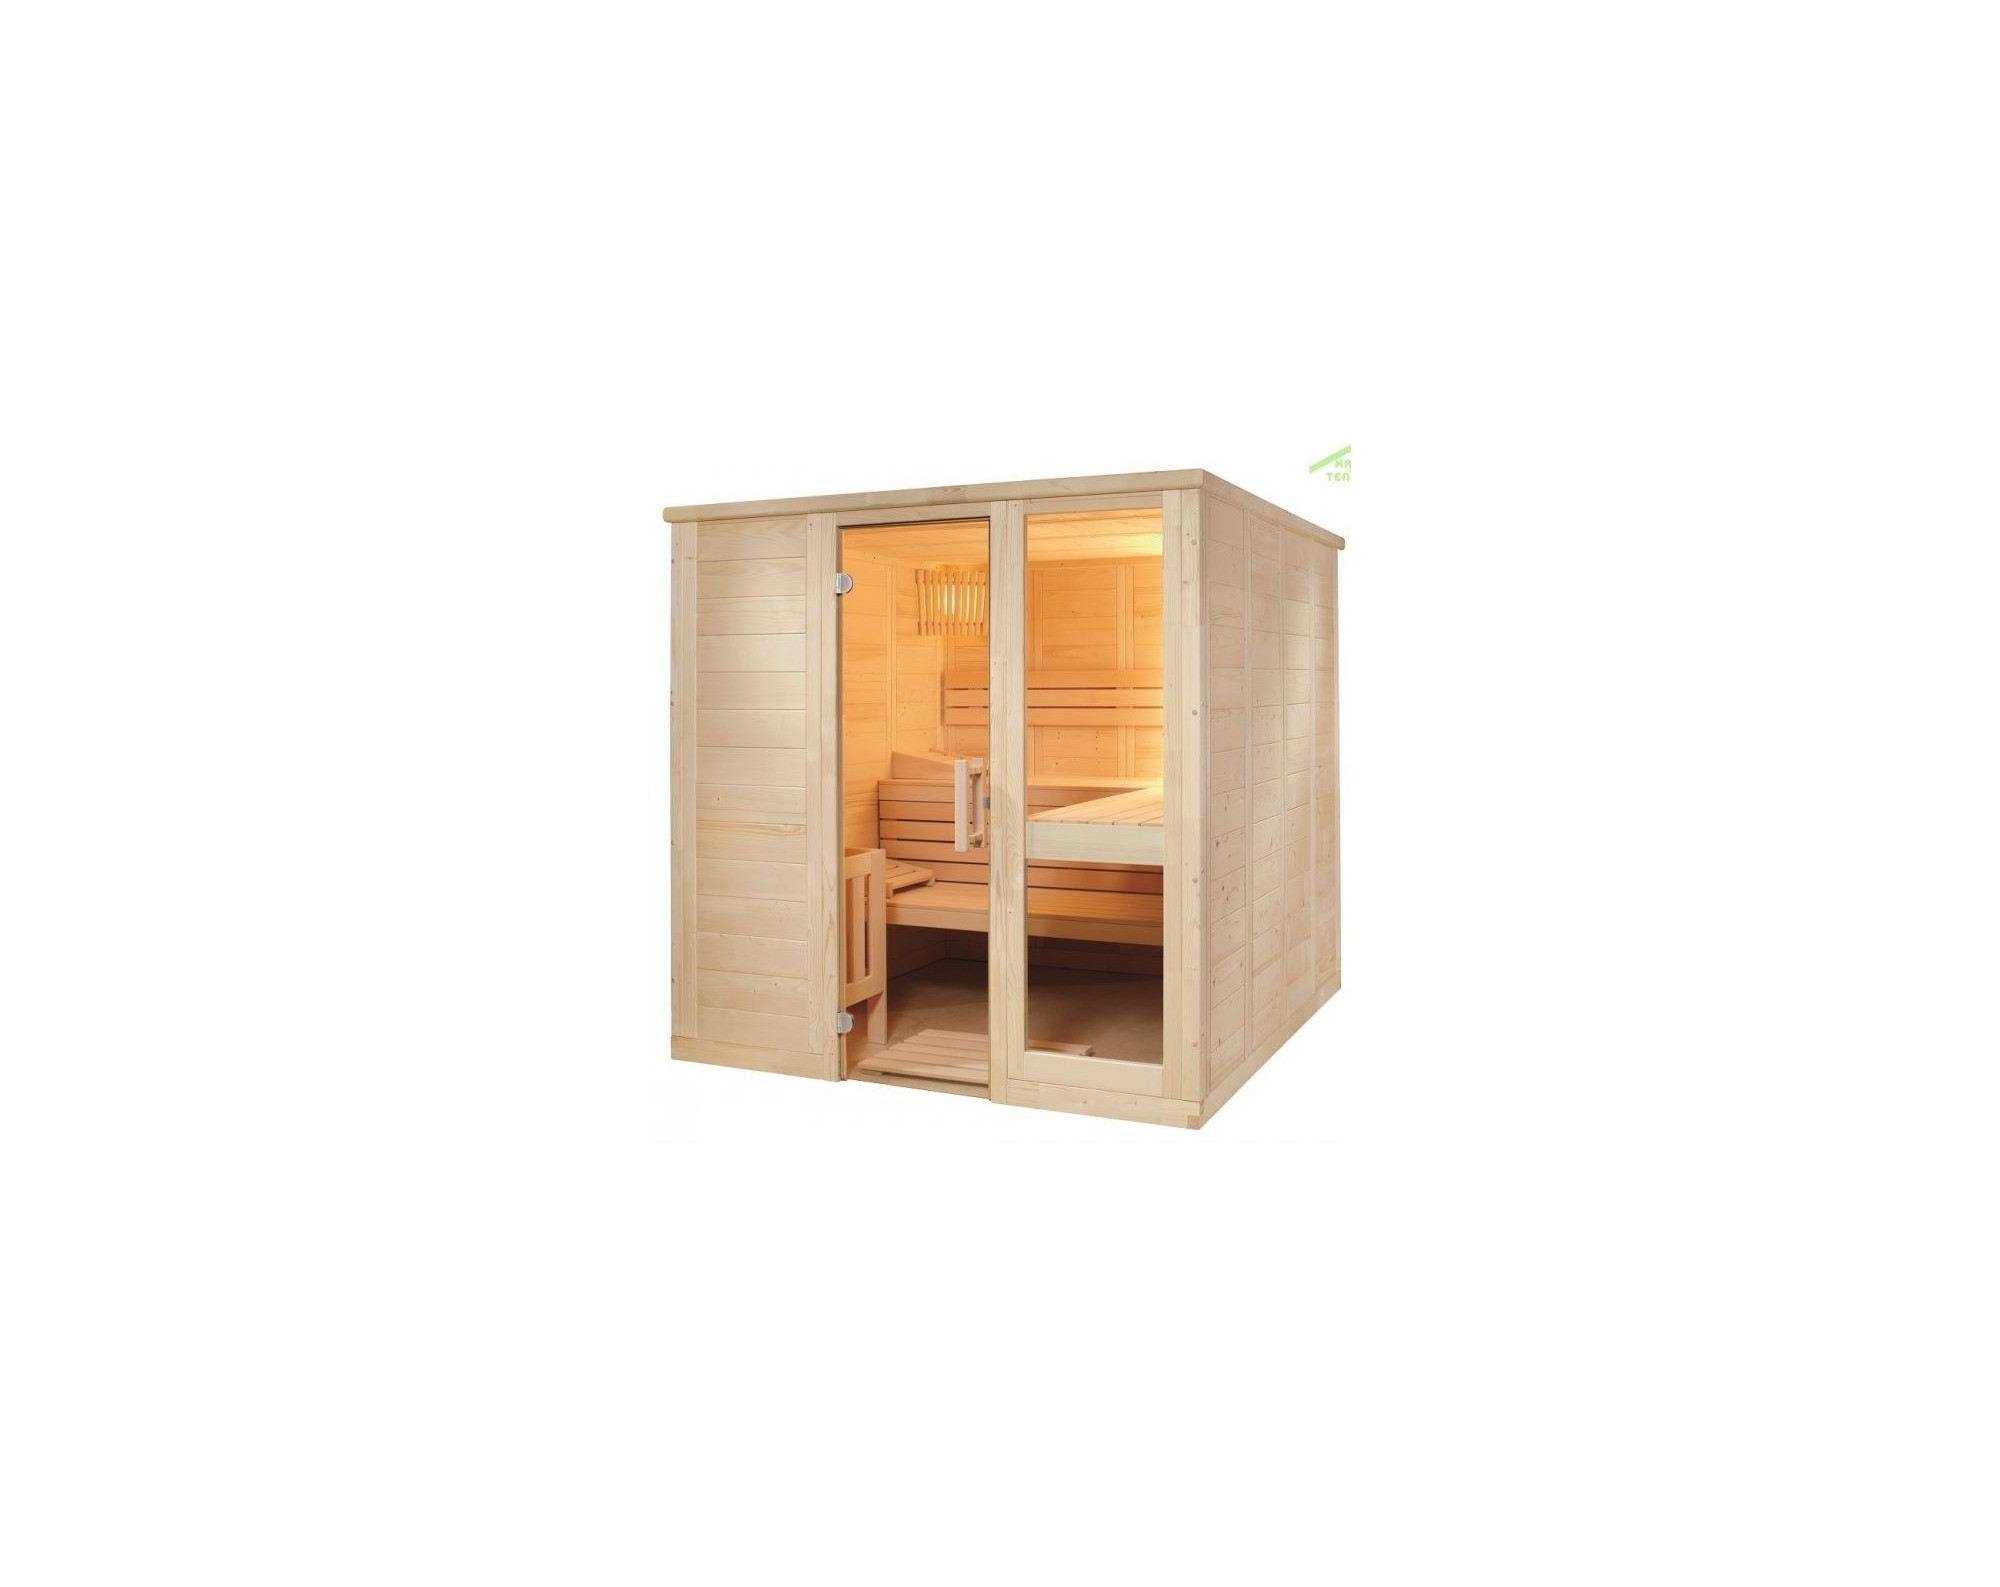 Sauna Komfort Large 208 x 206 x 204 cm - vurenhout - 3 banken 62 cm